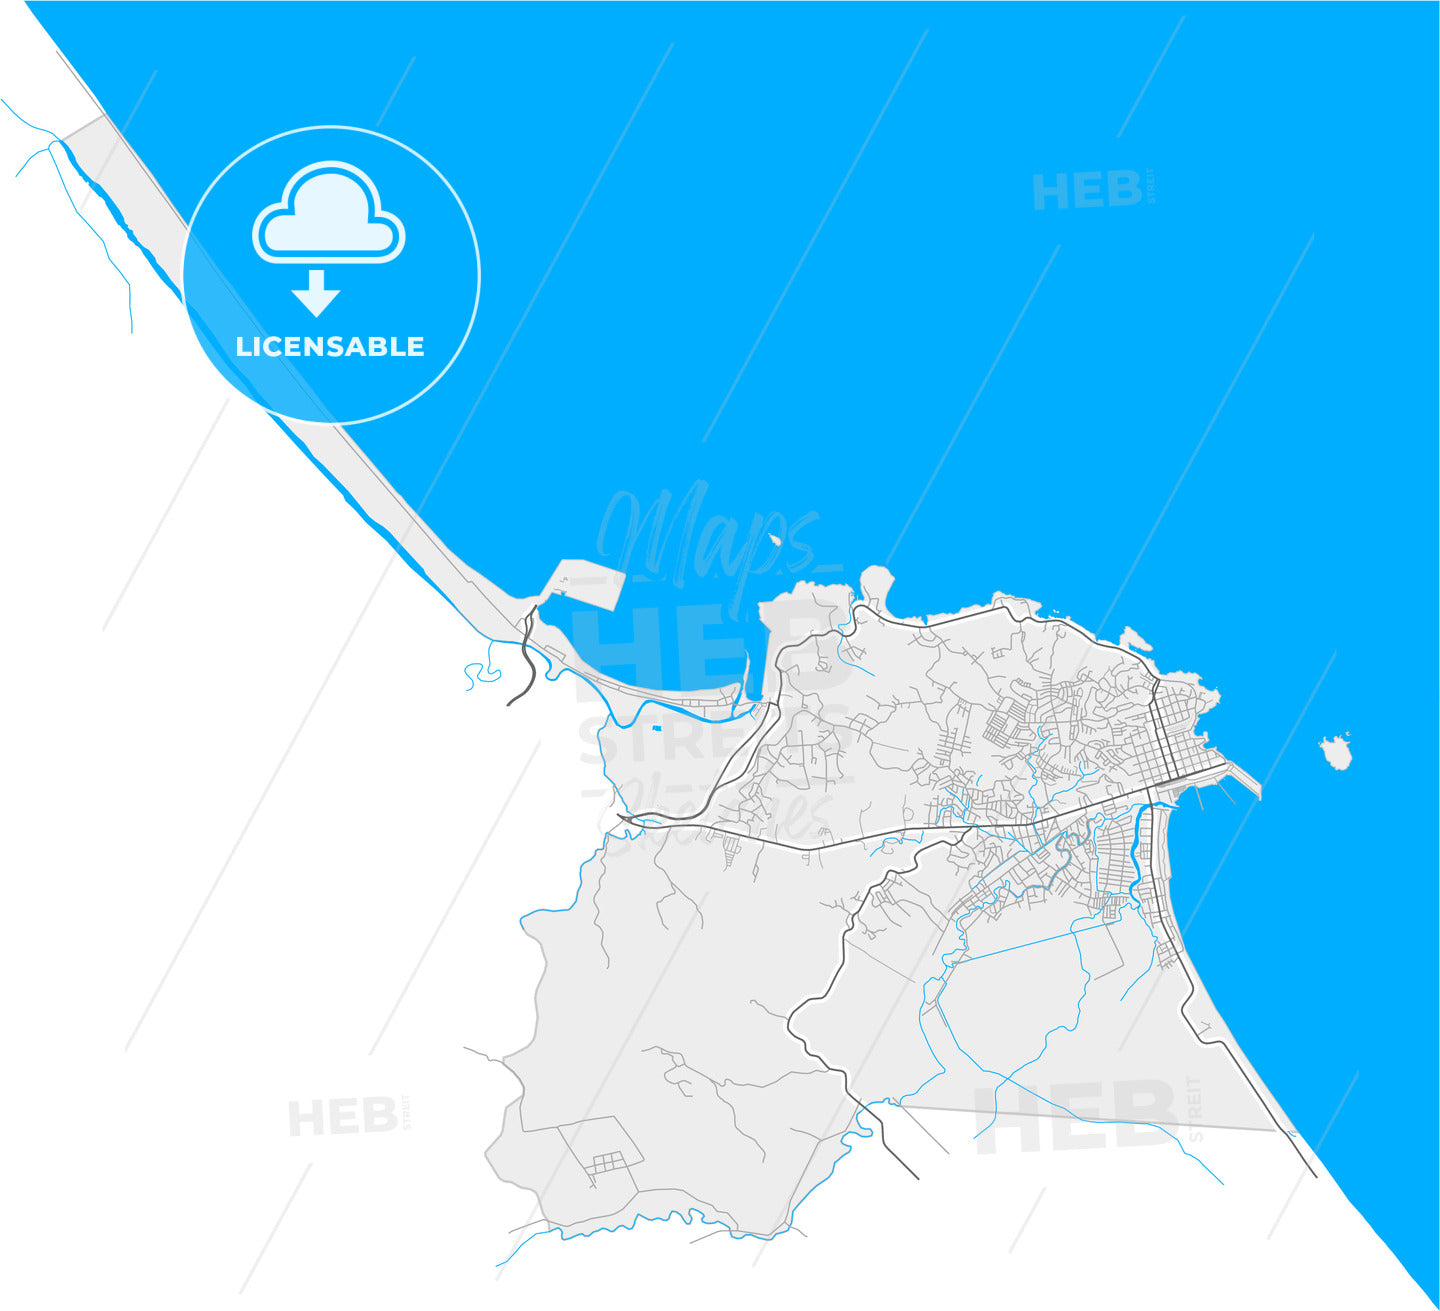 Limón, Limón, Costa Rica, high quality vector map